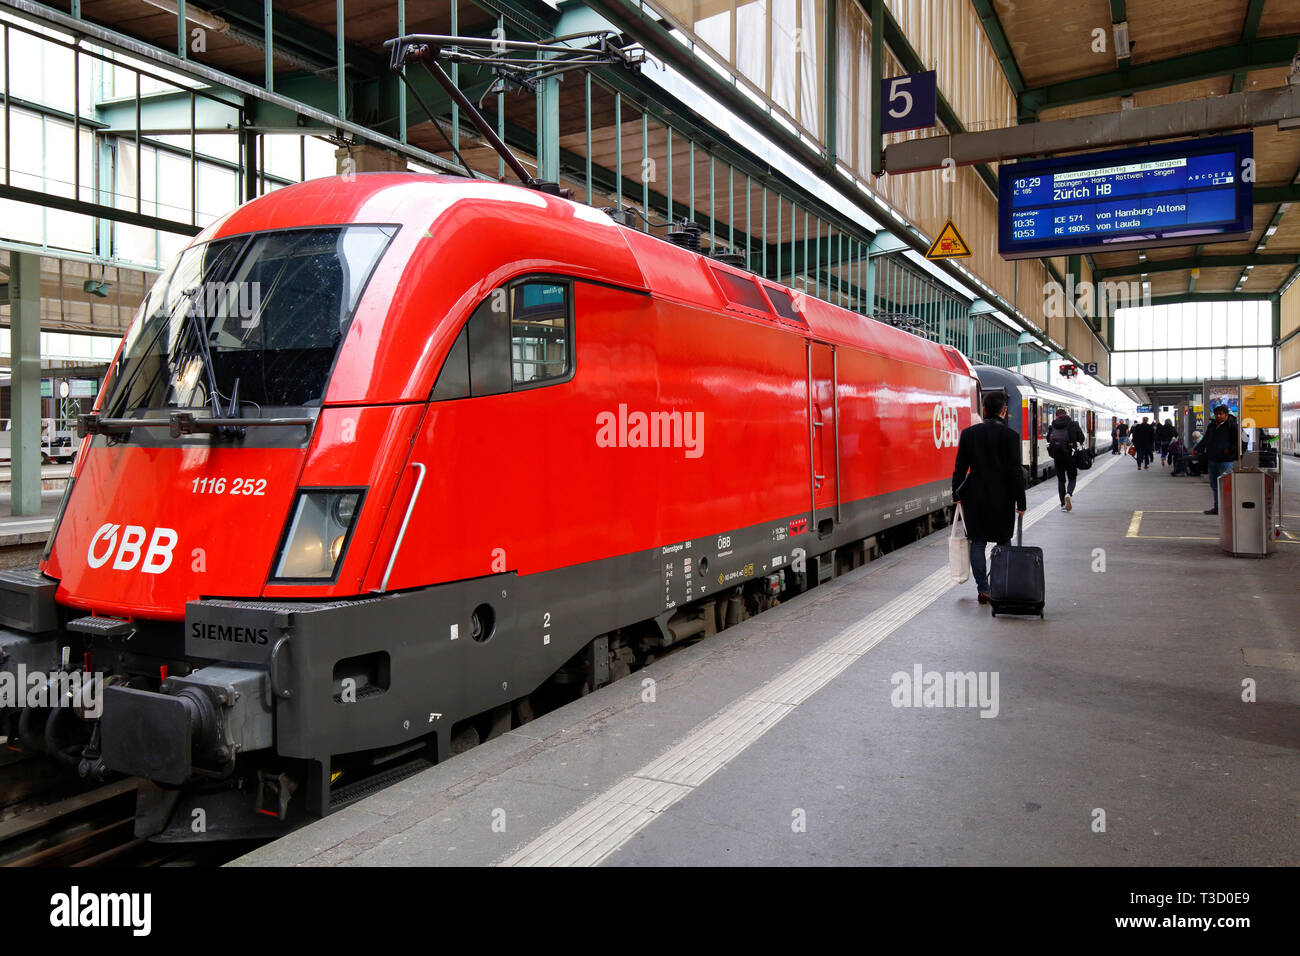 Un train ÖBB à destination de Zurich à Stuttgart Hbf, Stuttgart, Allemagne. Stuttgart Hauptbahnhof Banque D'Images